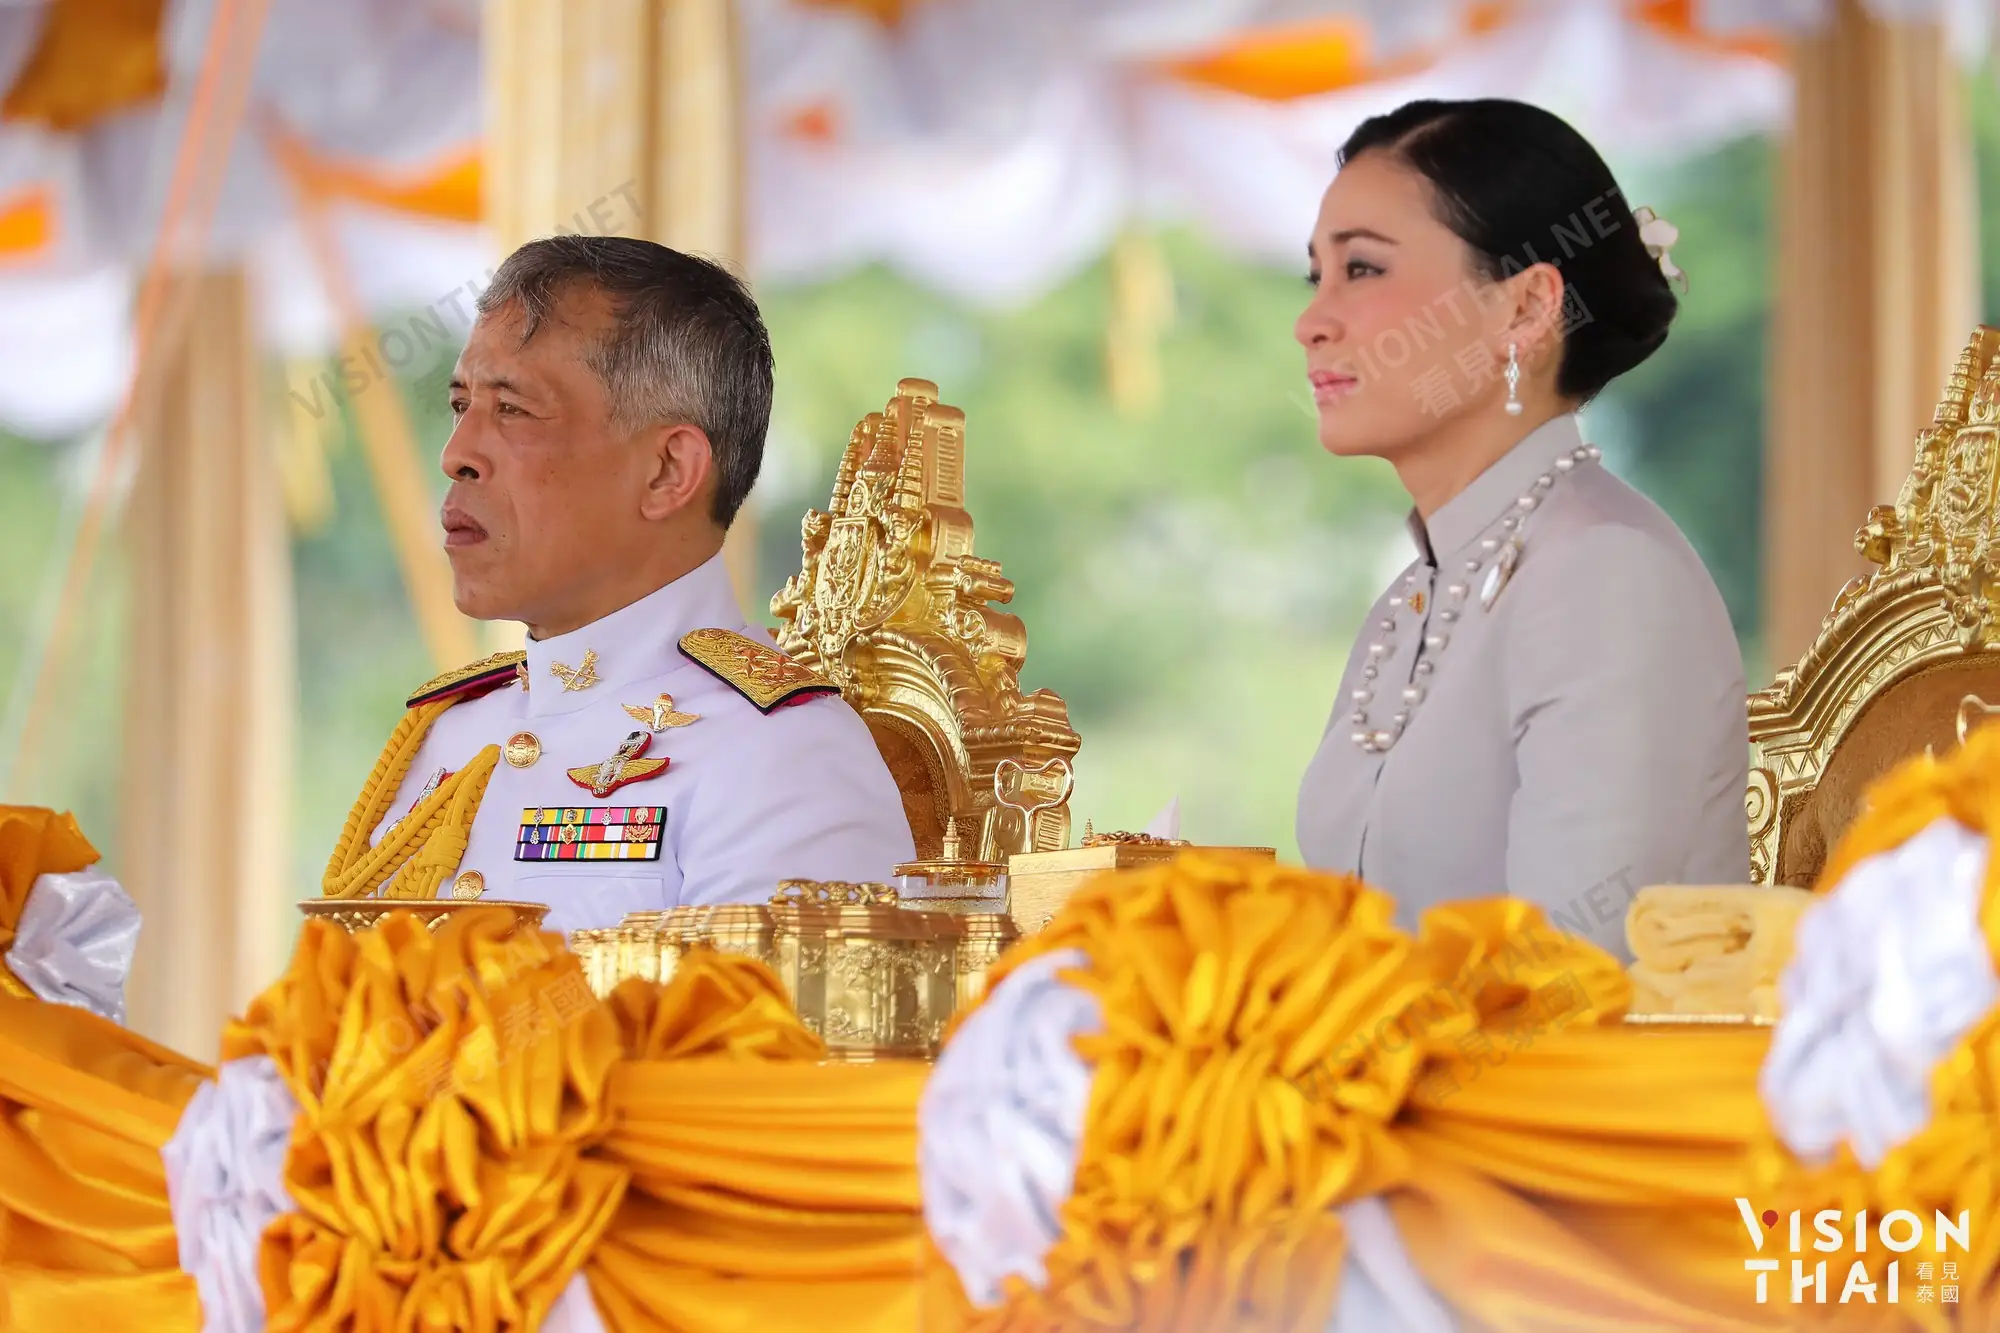 探視完帕公主 泰王王后雙確診 症狀輕微暫停工作（Vision Thai 看見泰國）